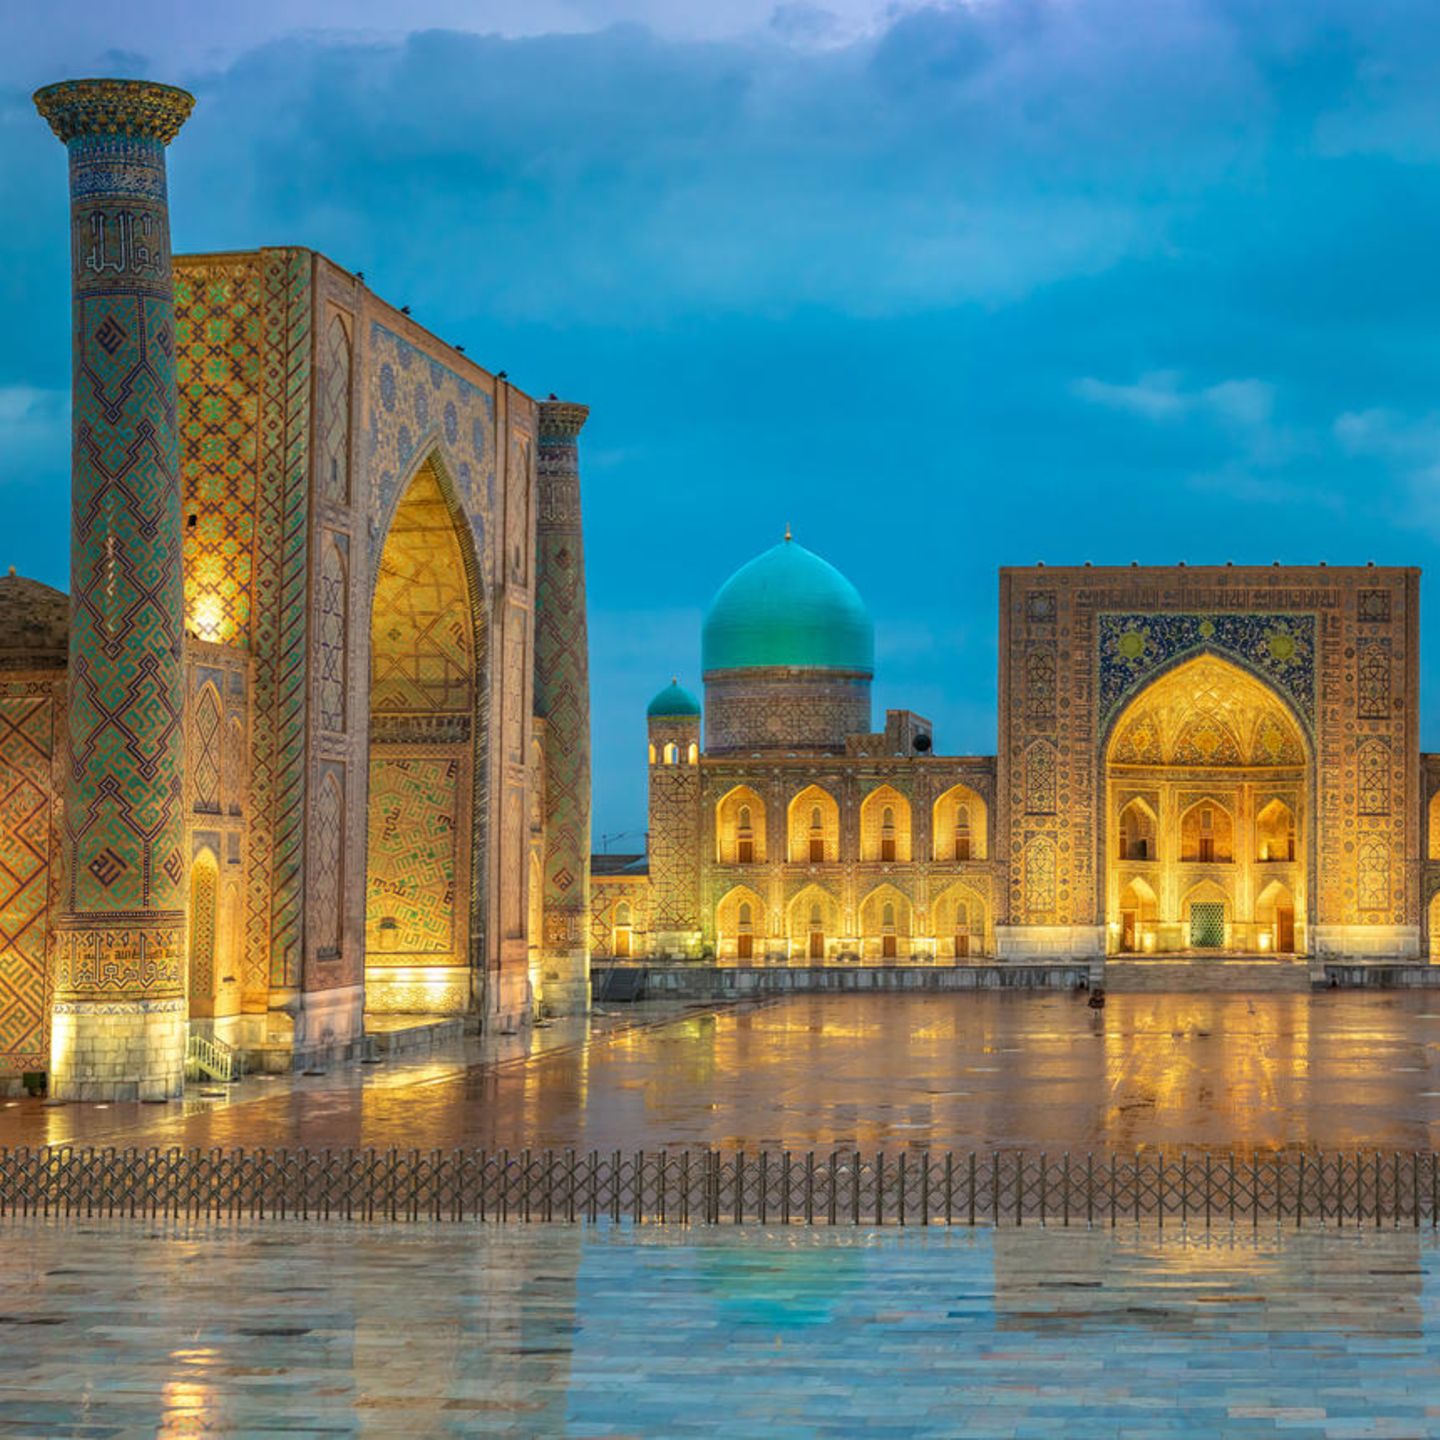 Der Registan in Samarkand, Usbekistan